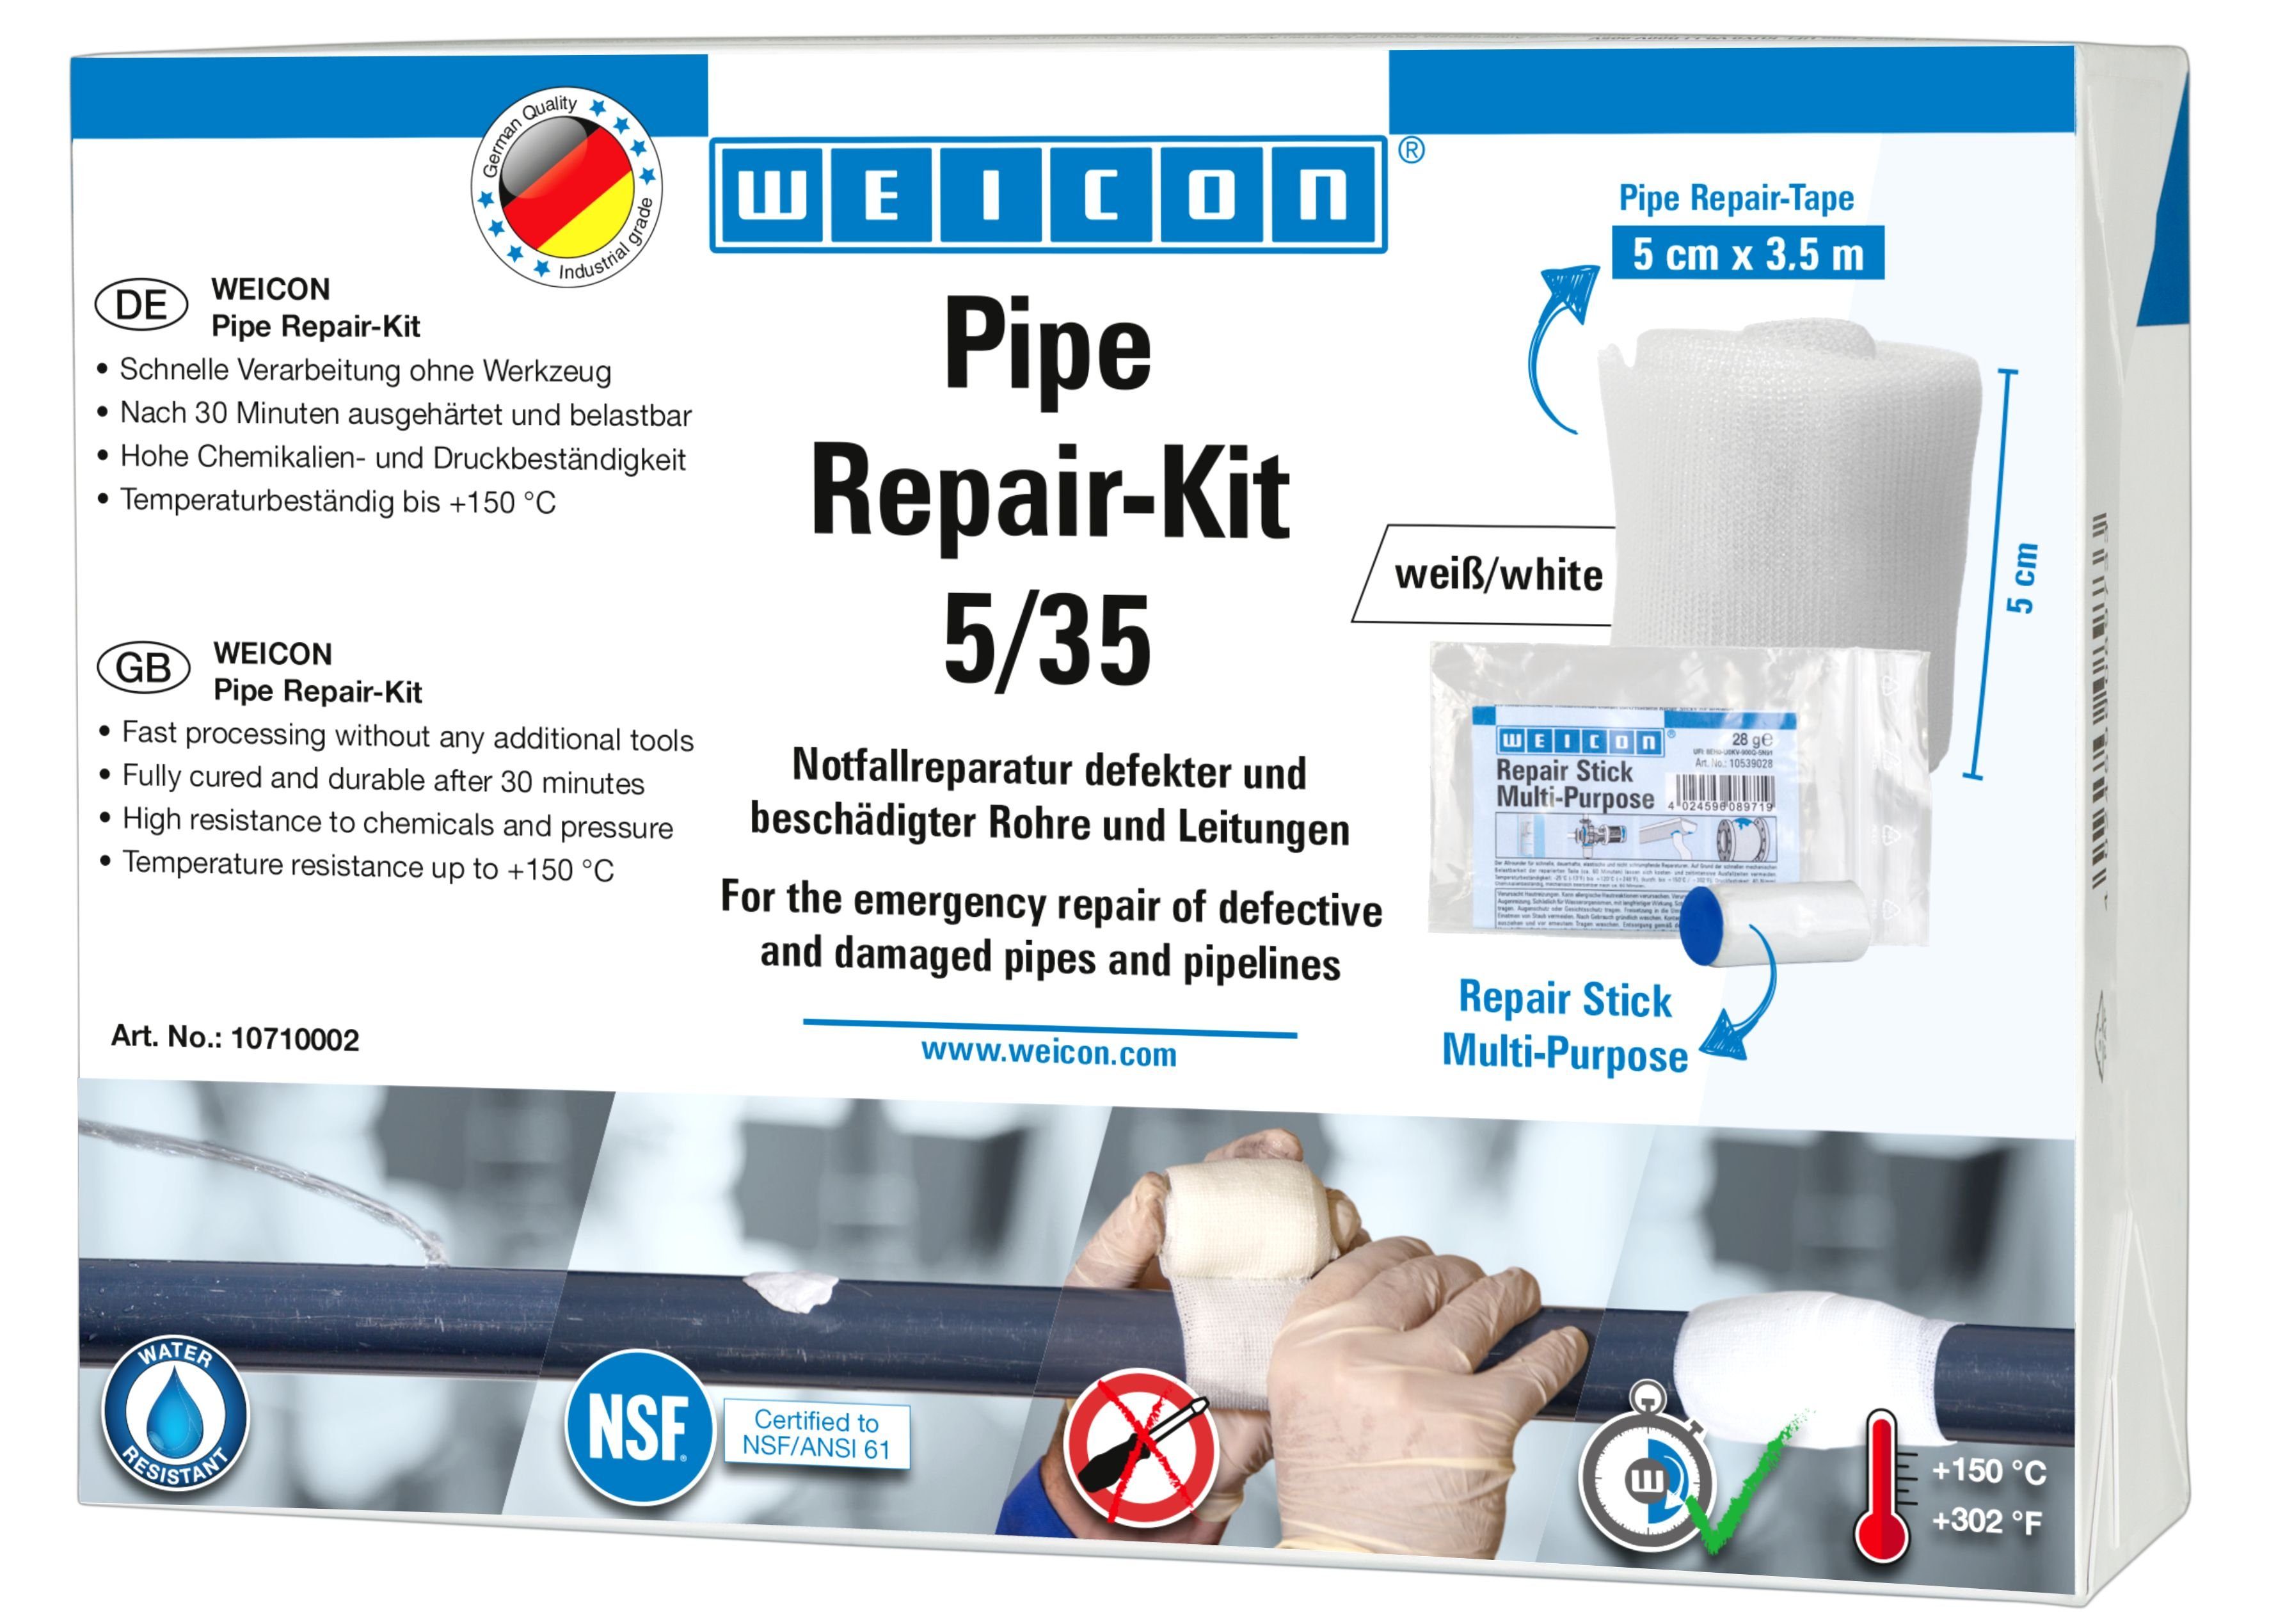 WEICON Reparatur-Set Pipe Repair-Kit, Rohre und cm beschädigter Leitungen 5 x m Notfall-Reparatur 3,5